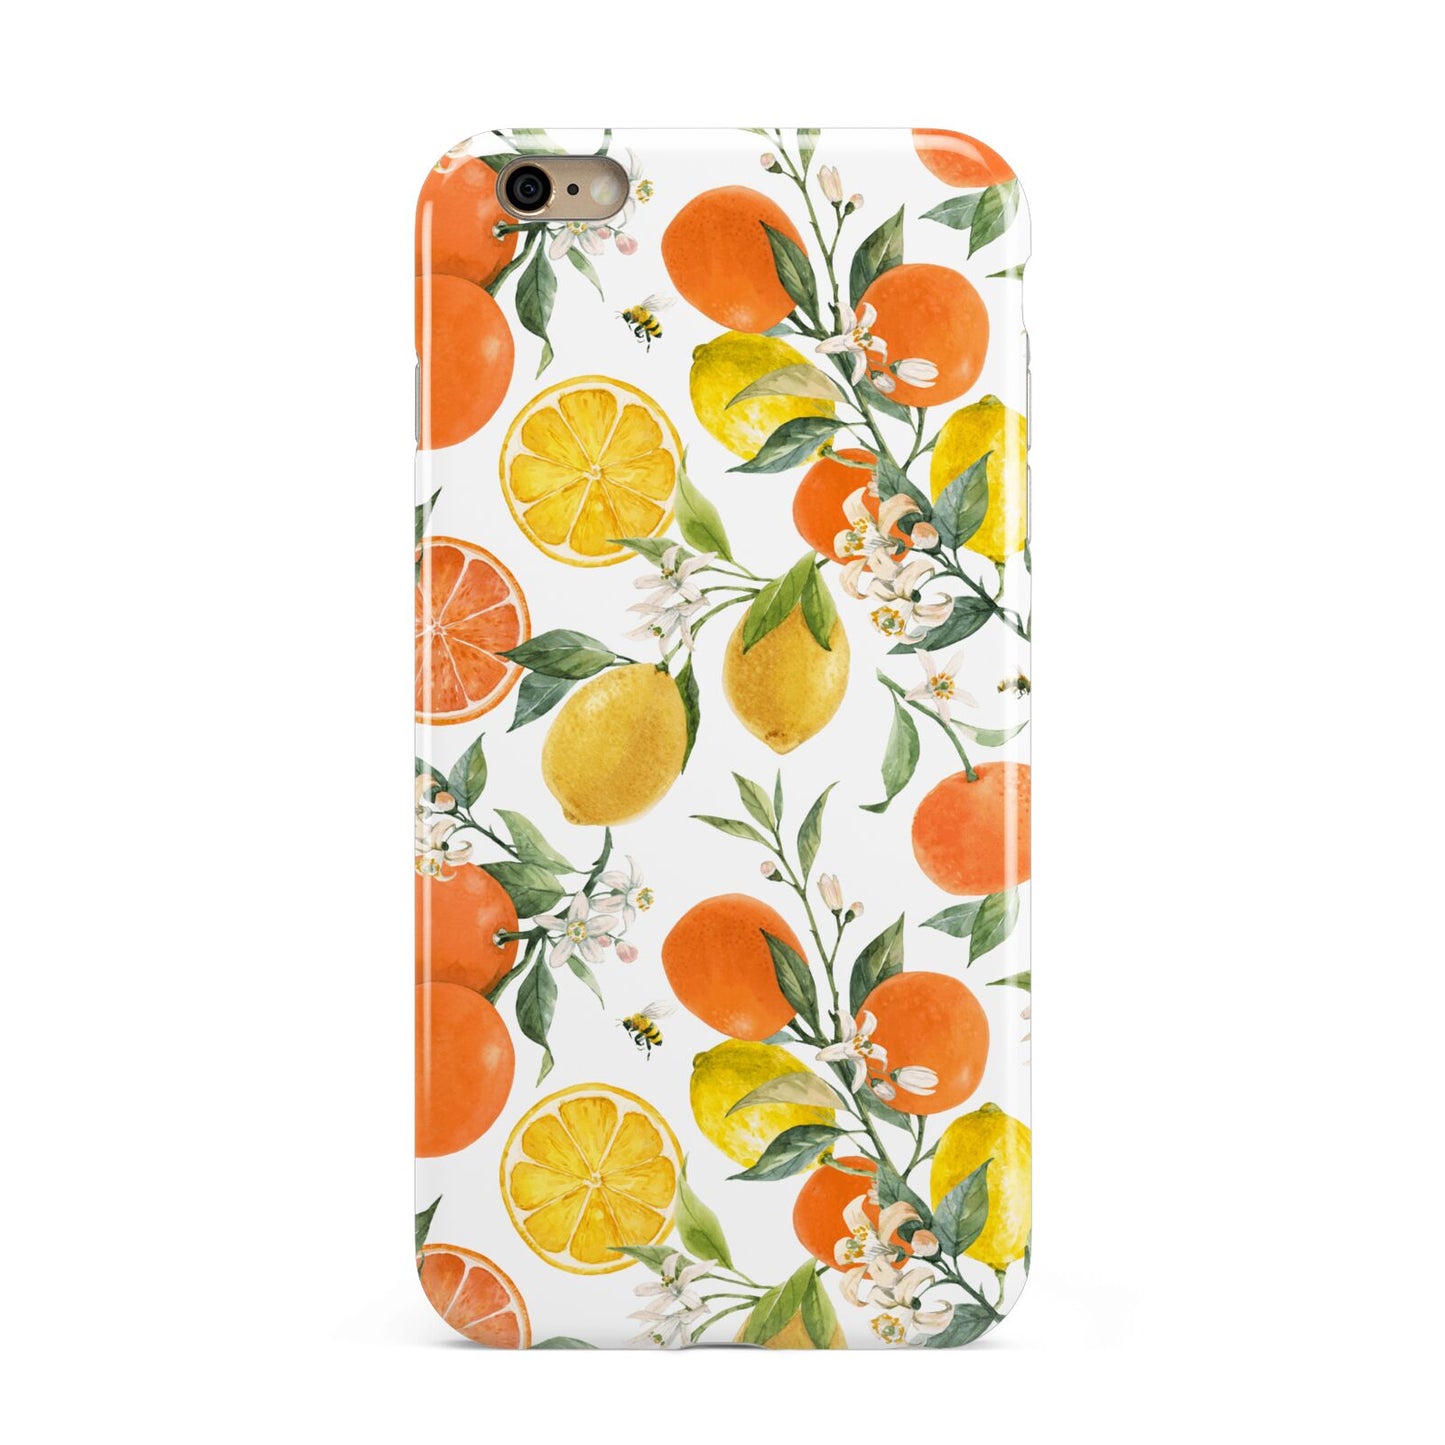 Lemons and Oranges Apple iPhone 6 Plus 3D Tough Case